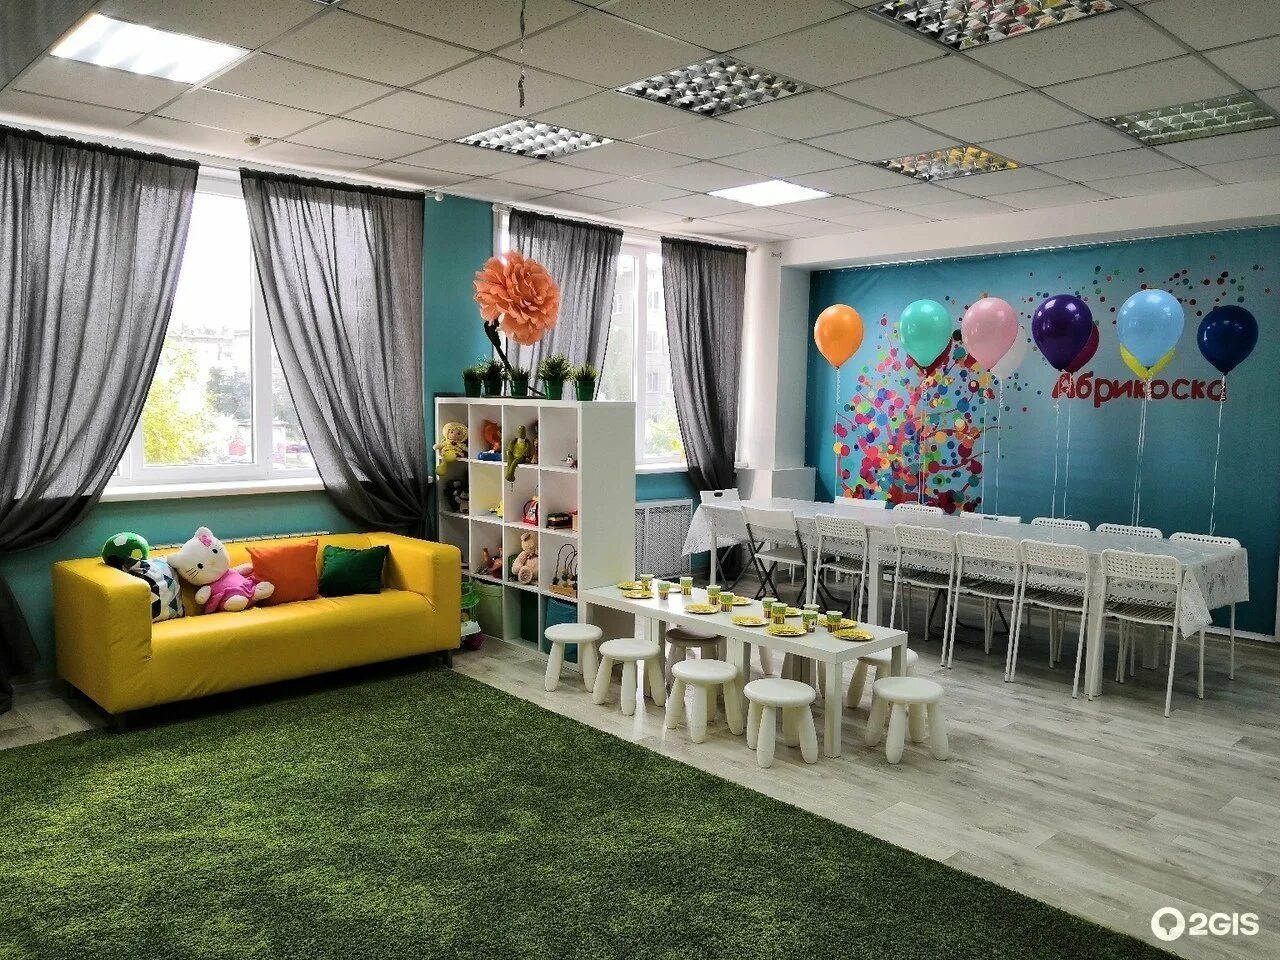 Аренда помещения для дня рождения. Детское кафе Новосибирск Абрикоска. Комната для проведения детских праздников. Помещение для празднования детского дня рождения. Детские комнаты для проведения праздников.